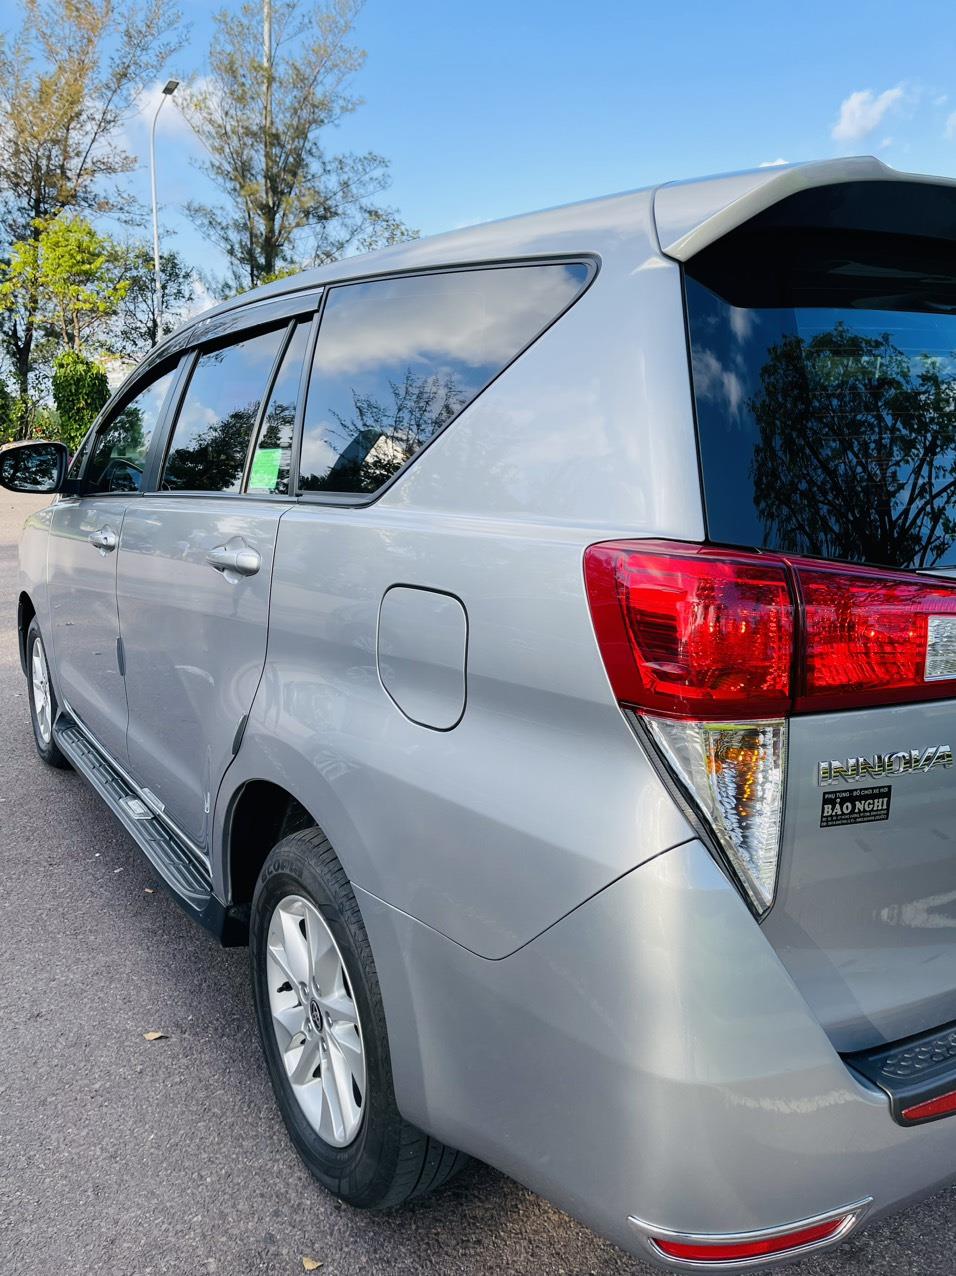 UUsed Car Dealer Trimap đang bán; Toyota Innova E 2.0 sx 2019, đăng ký 2020 một chủ mua mới đầu. 407719